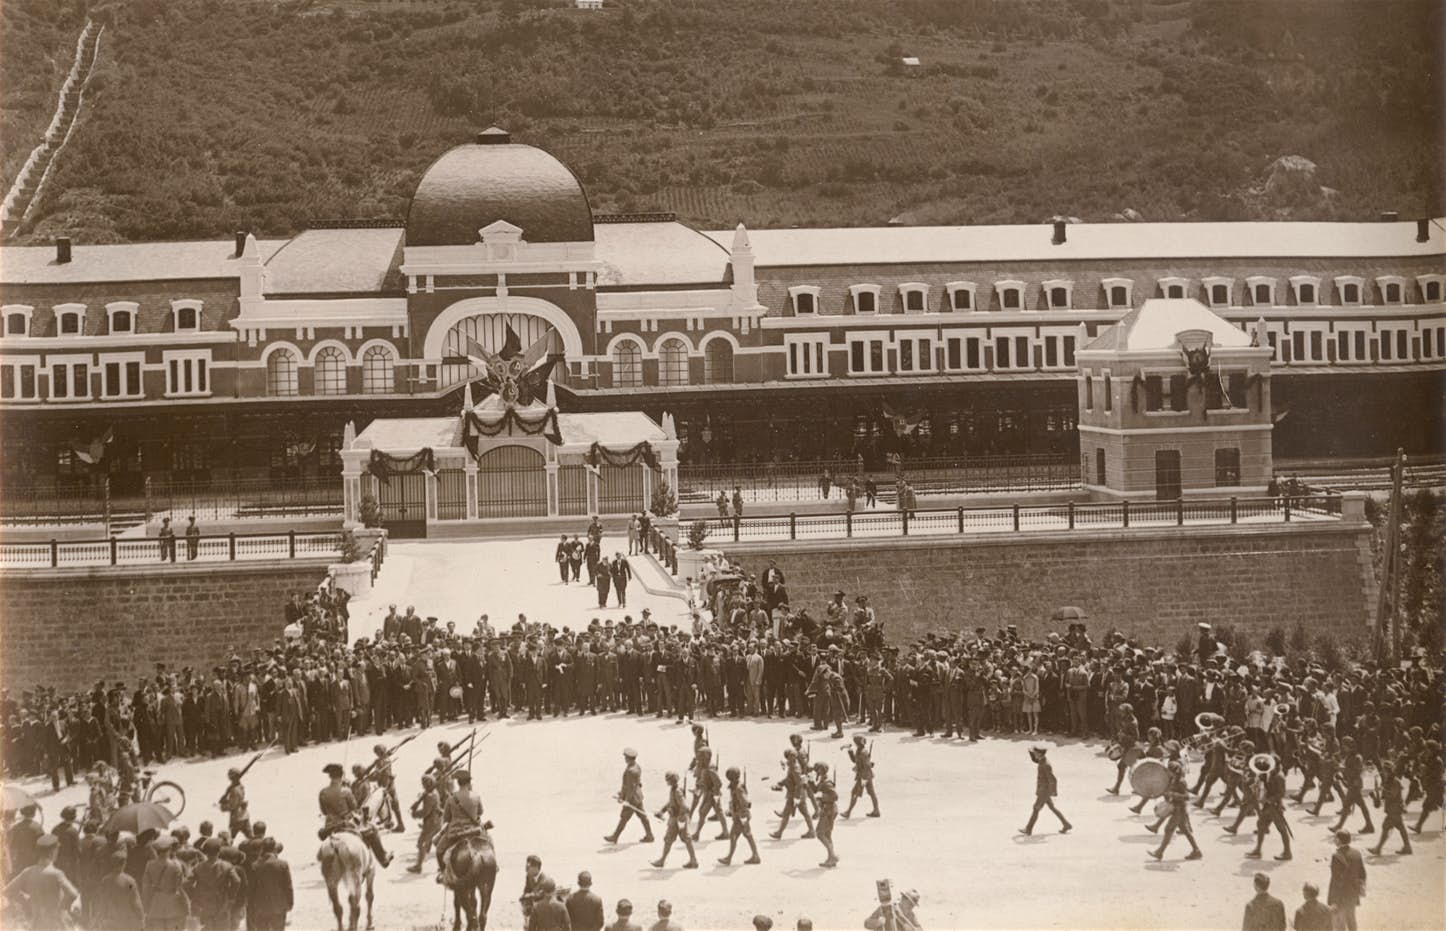 Canfranc állomás 1928-ban, az átadás napján (forrás: Wikipédia)